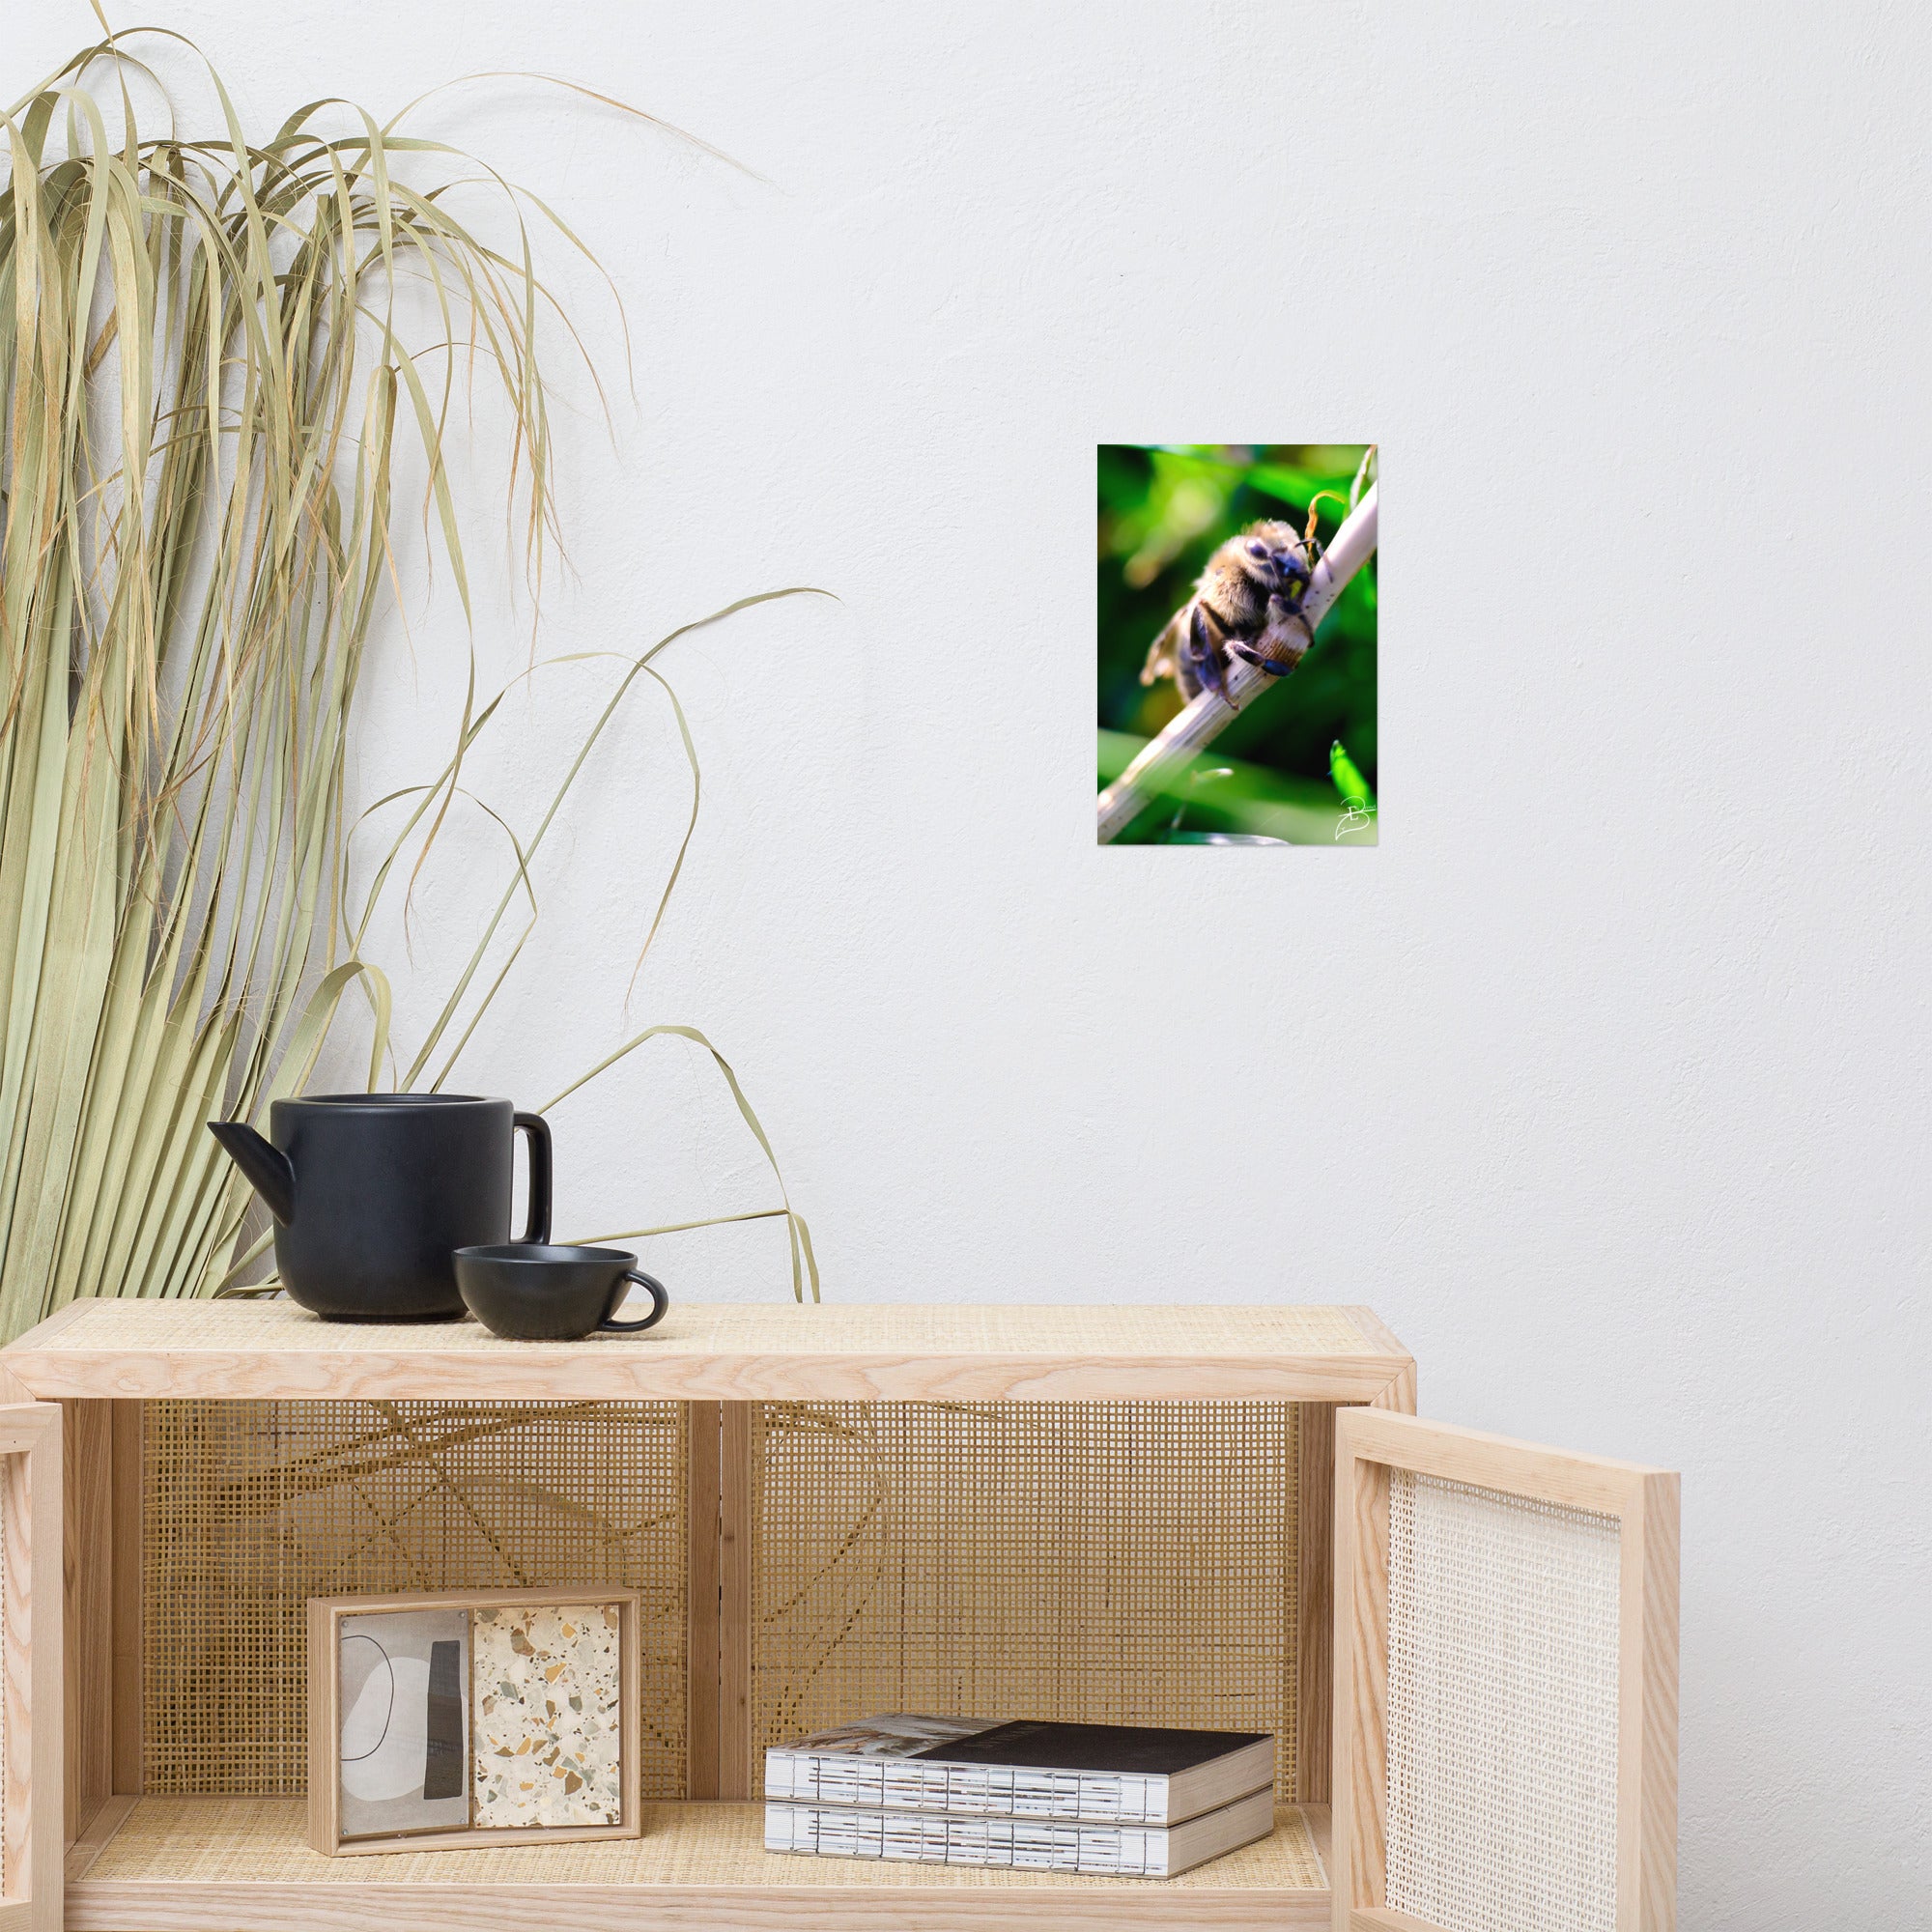 Photographie macro détaillée d'une abeille sauvage se posant sur une tige, capturant la complexité de sa structure, par Eli Bernet.